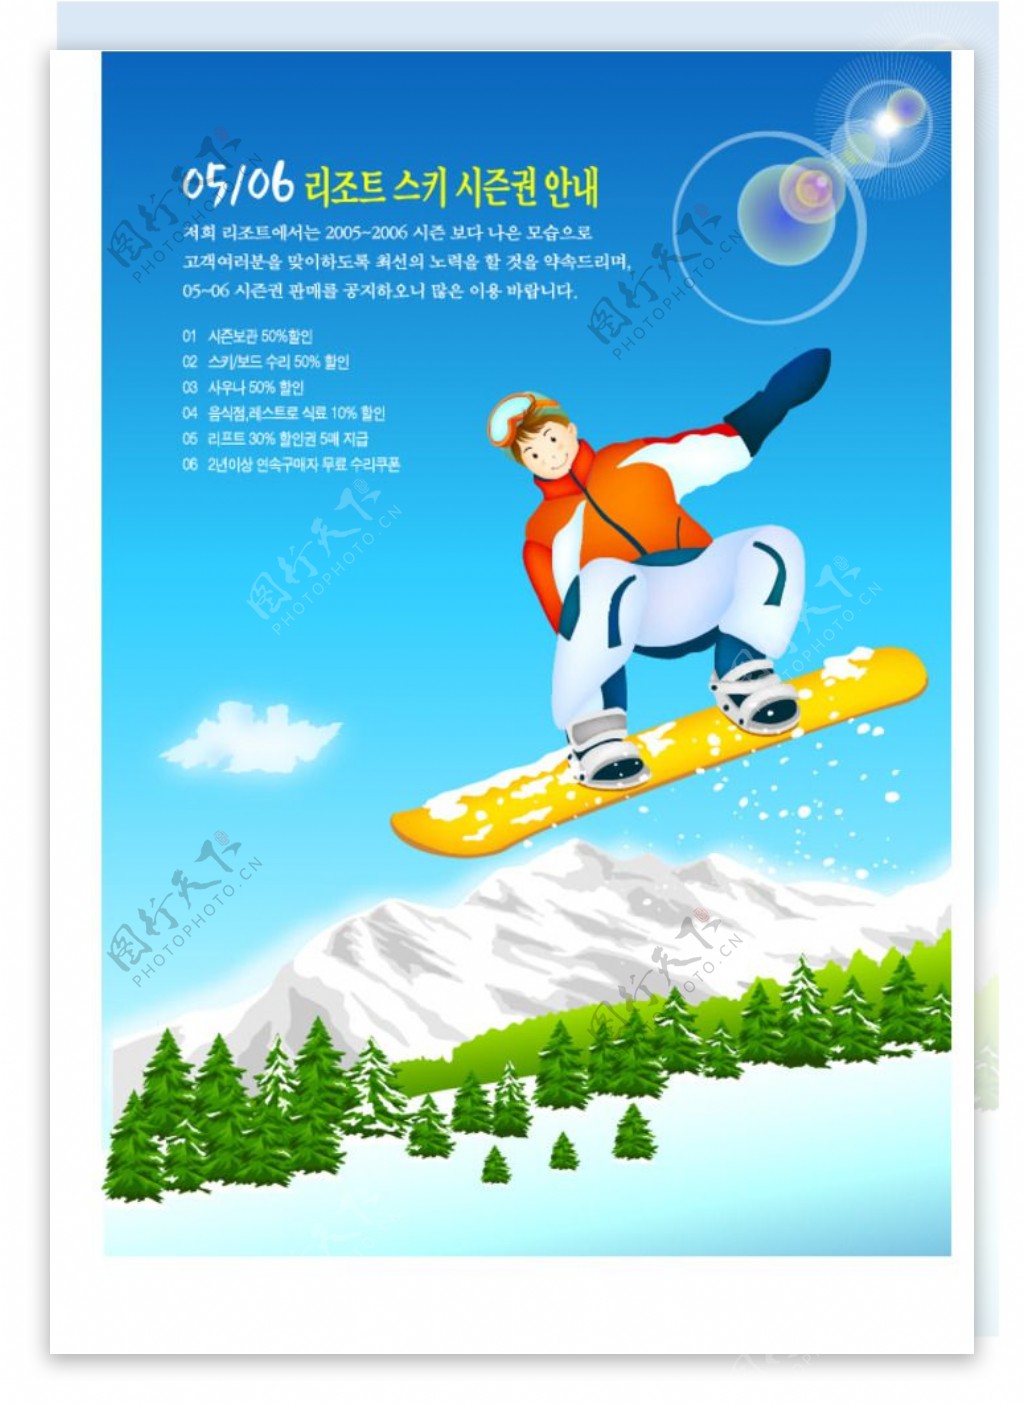 冬季滑雪运动